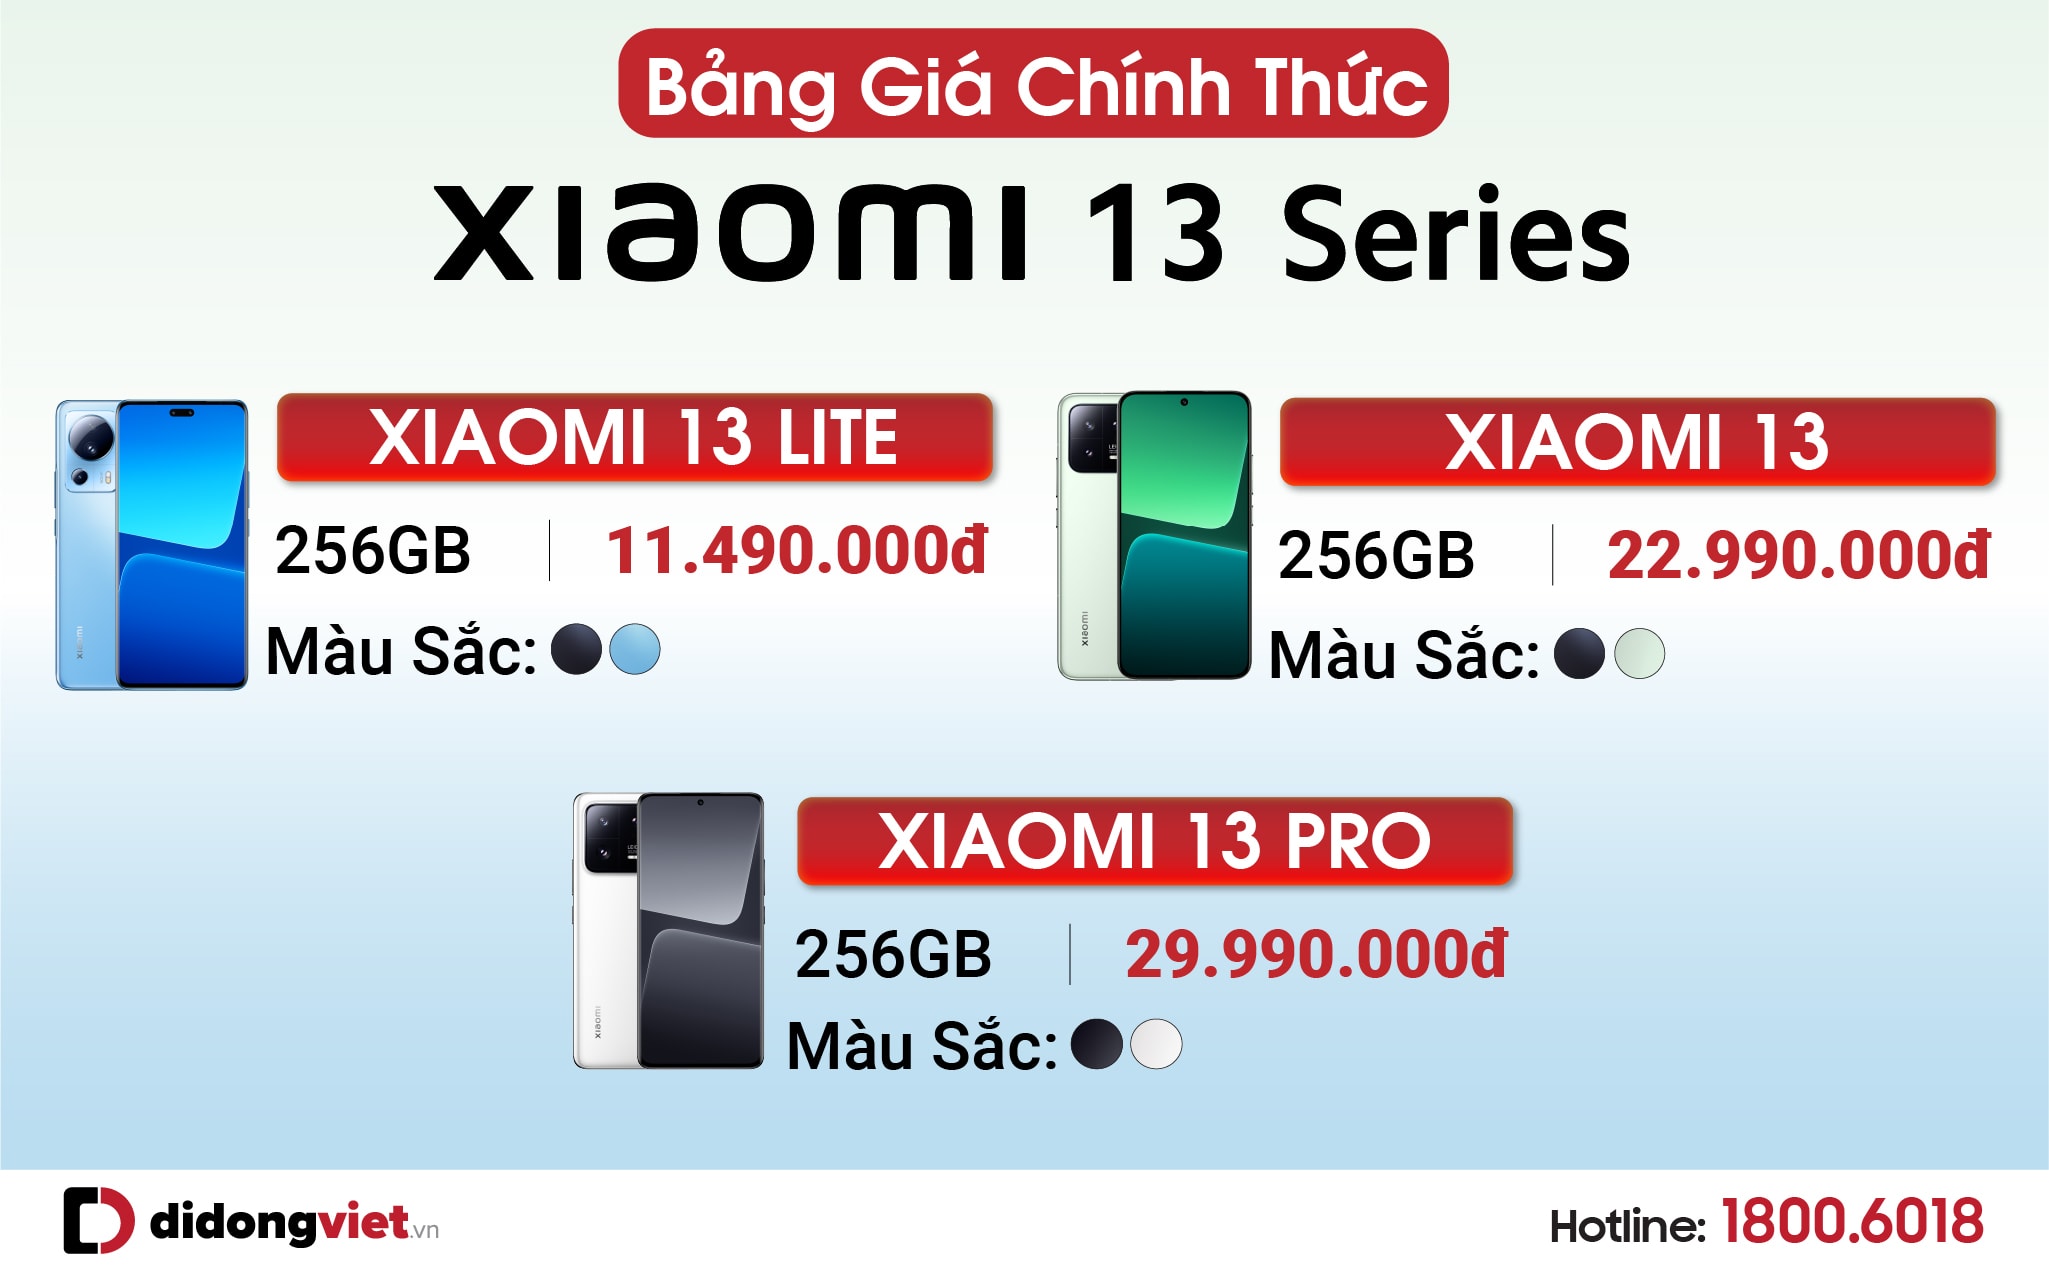 Di Động Việt nhận đặt trước Xiaomi 13 series từ 11.49 triệu đồng, kèm ưu đãi lên đến 6 triệu đồng